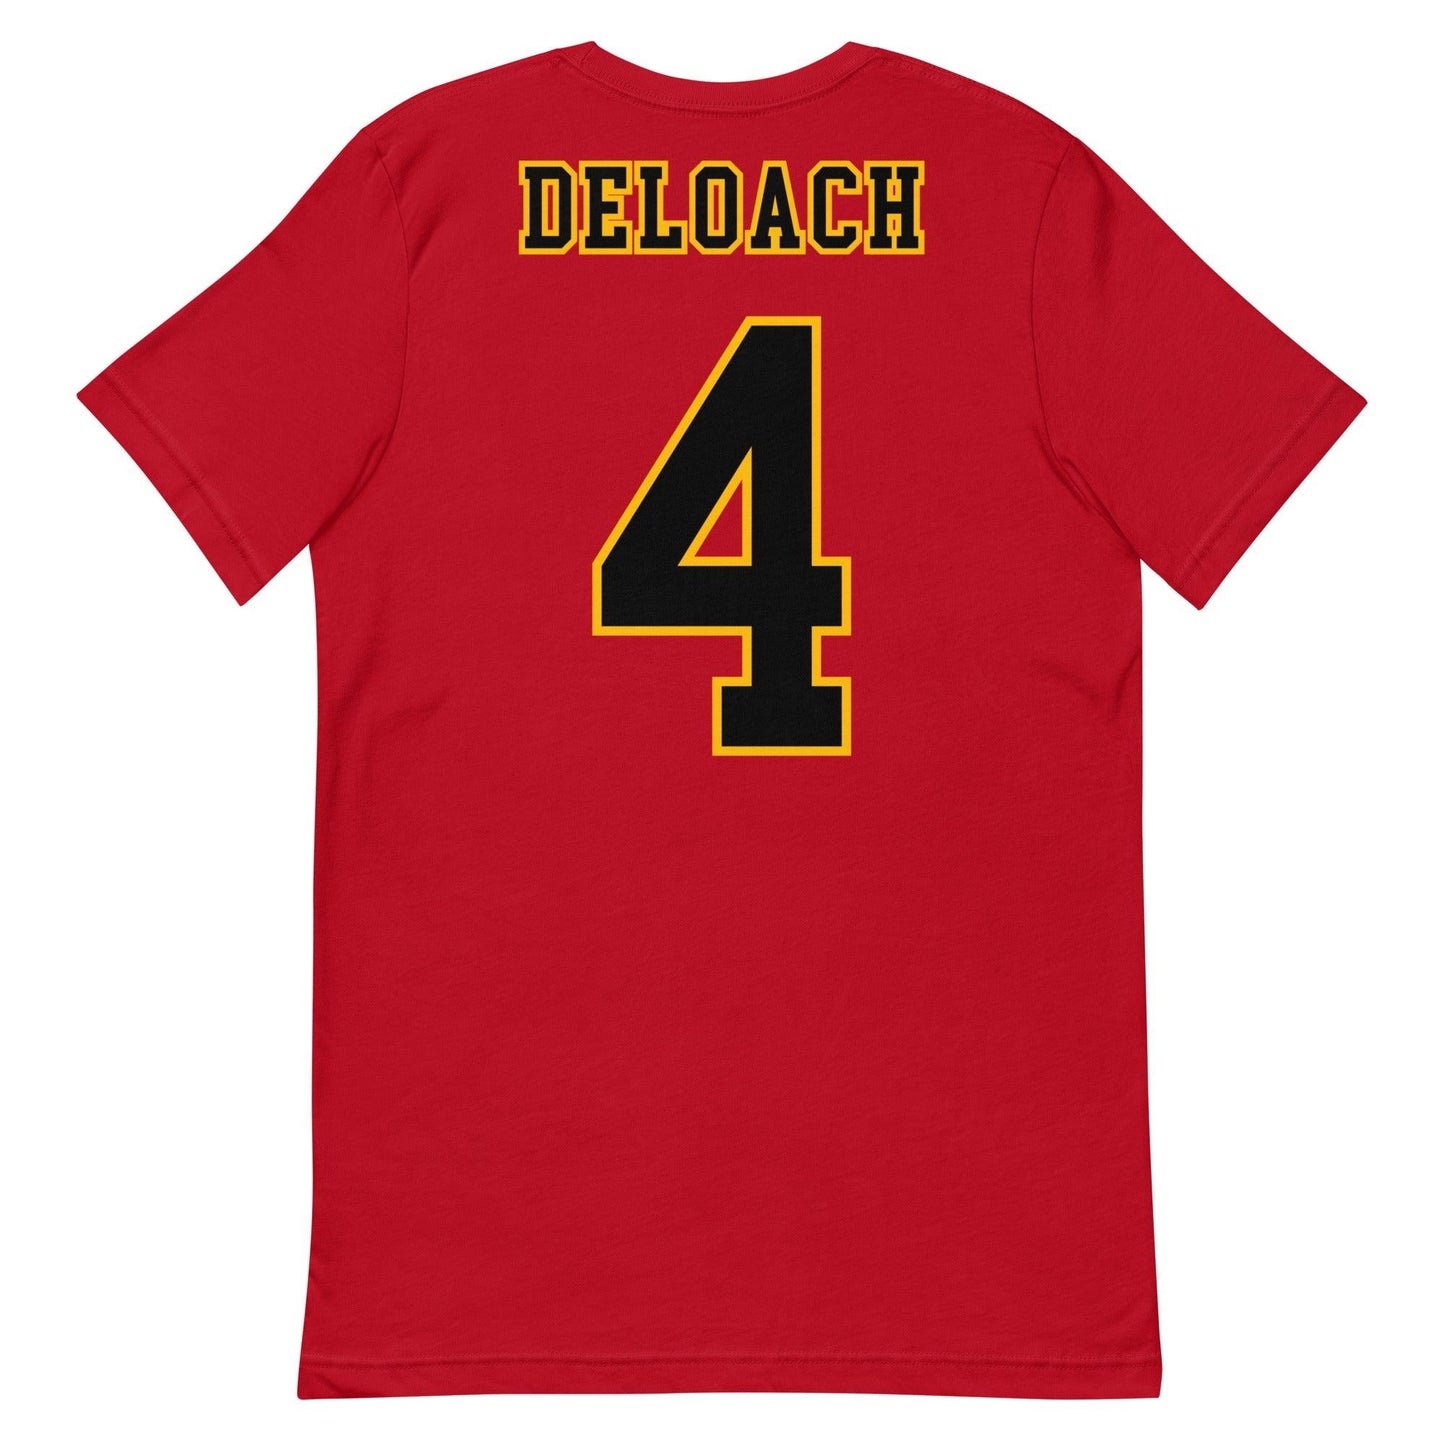 Jalen Deloach "Jersey" t-shirt - Fan Arch